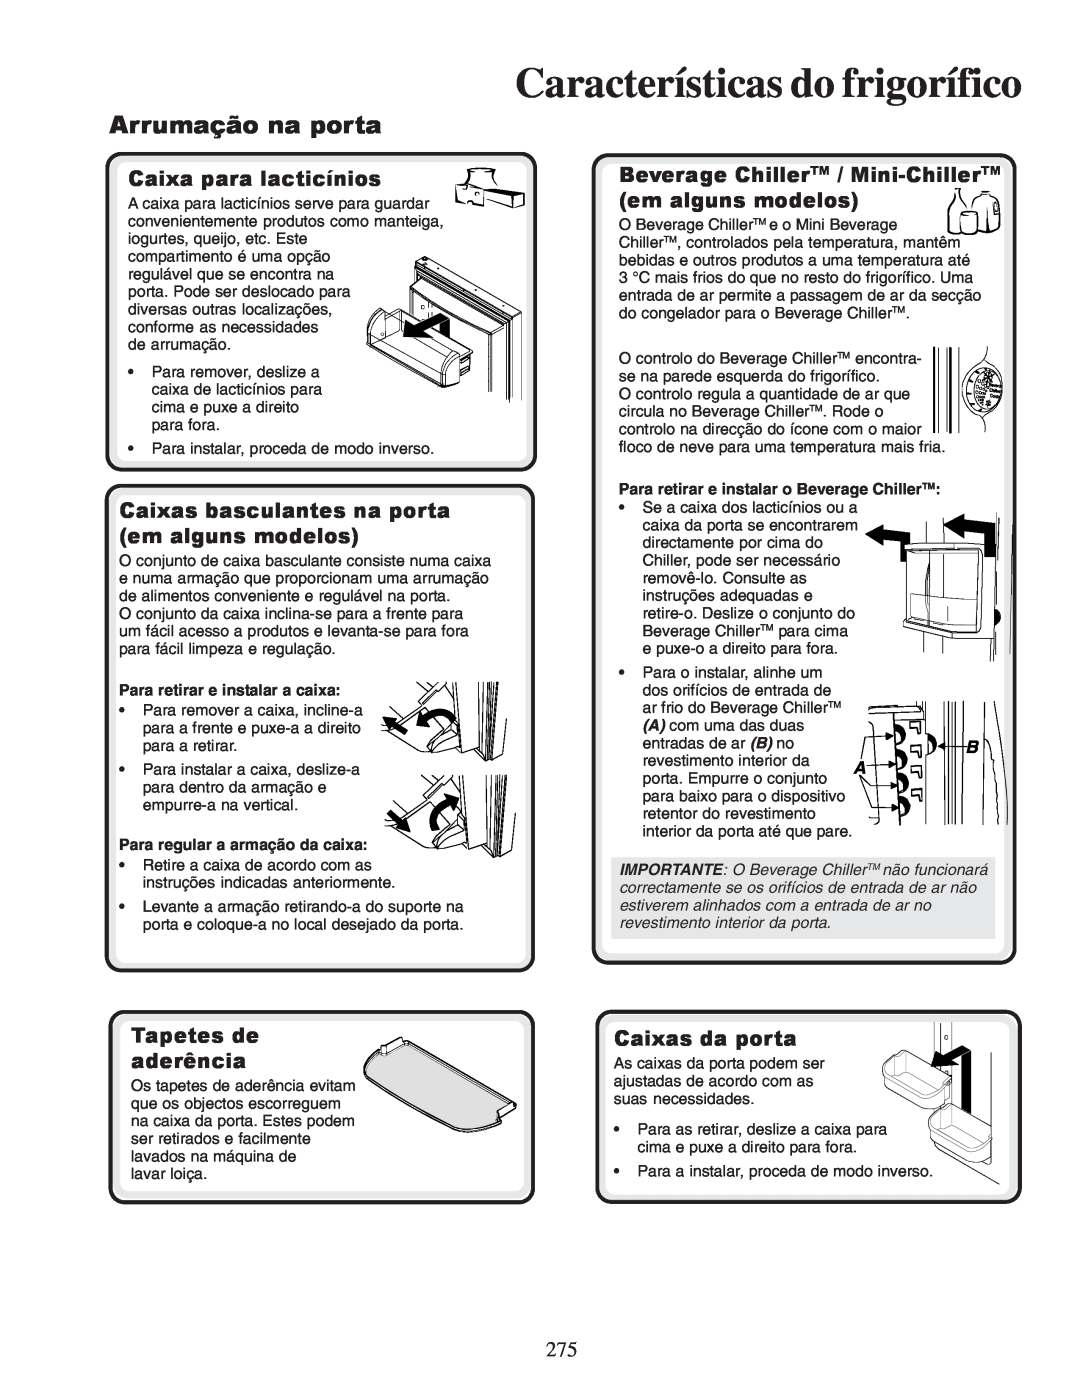 Amana XRSR687BW Características do frigorífico, Arrumação na porta, Caixa para lacticínios, Tapetes de aderência 